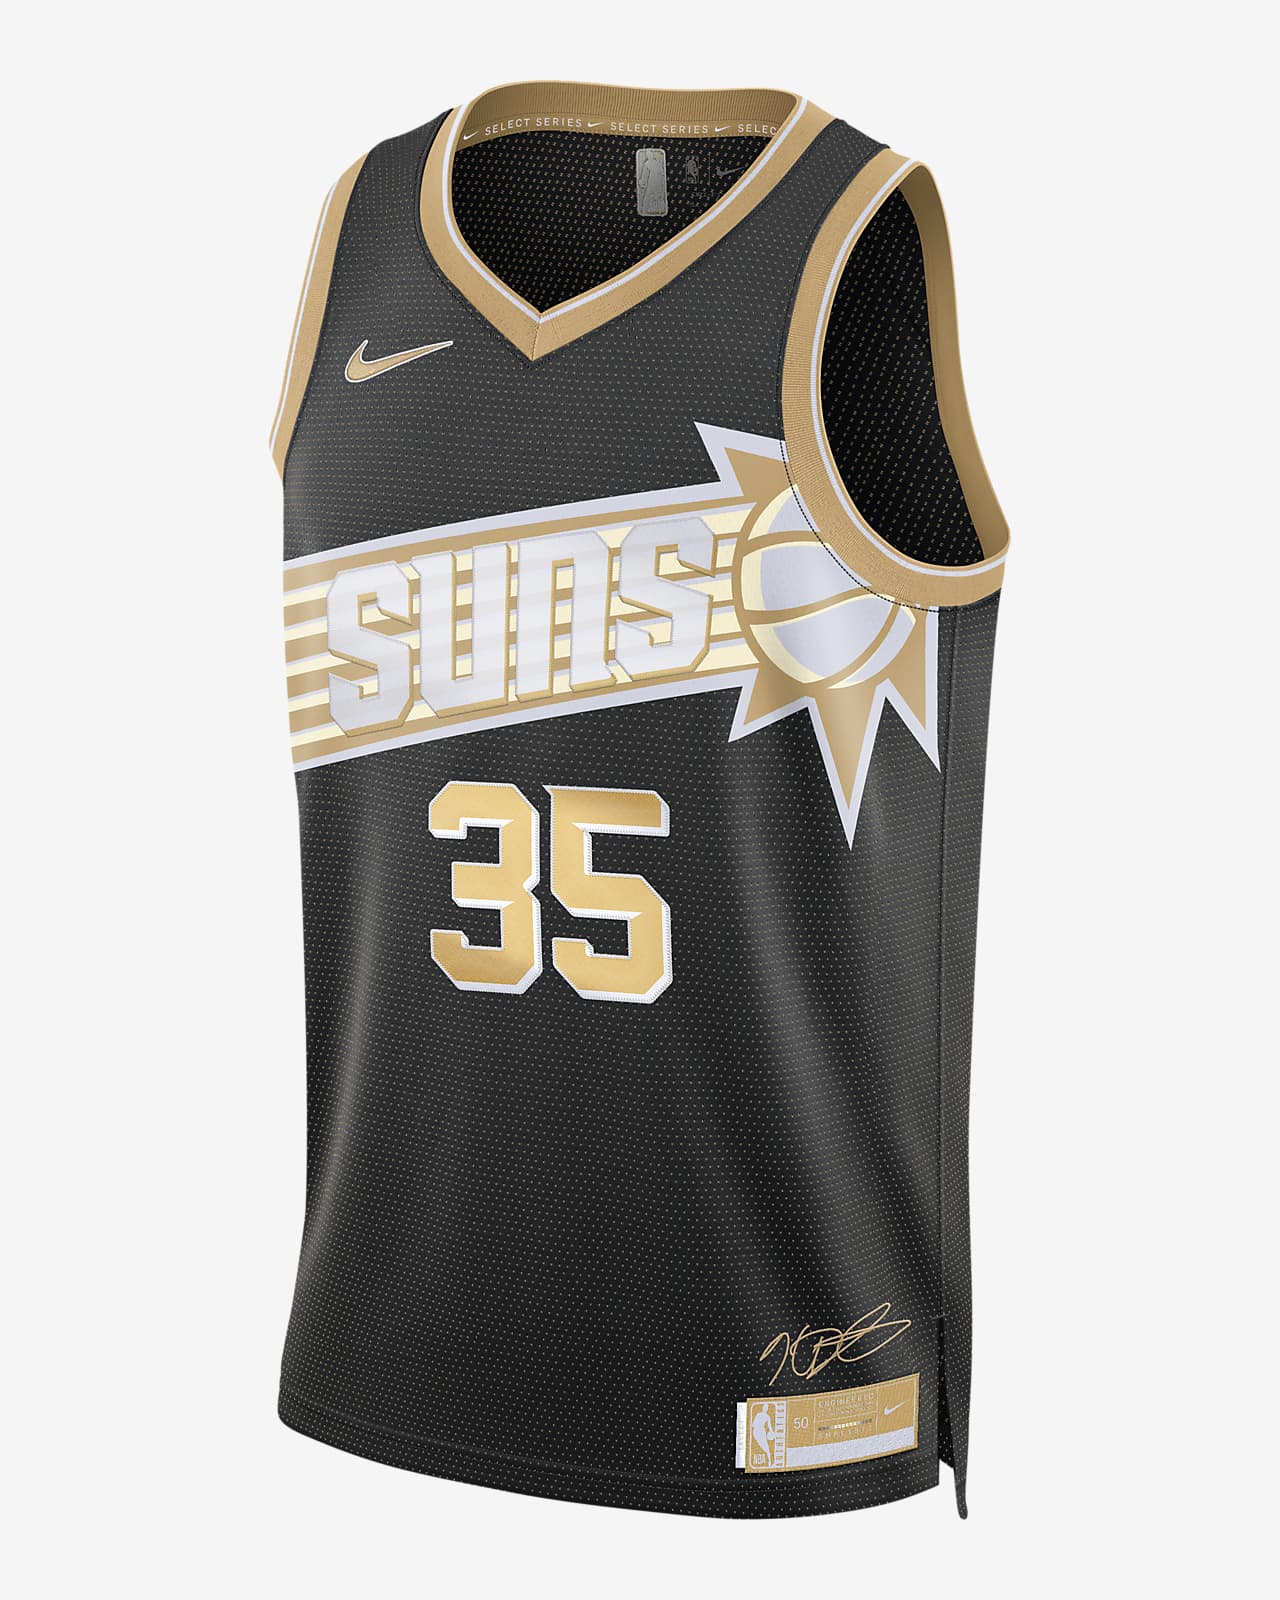 2024 赛季菲尼克斯太阳队 (Kevin Durant) Select Series Nike Dri-FIT NBA Jersey 男子速干球衣